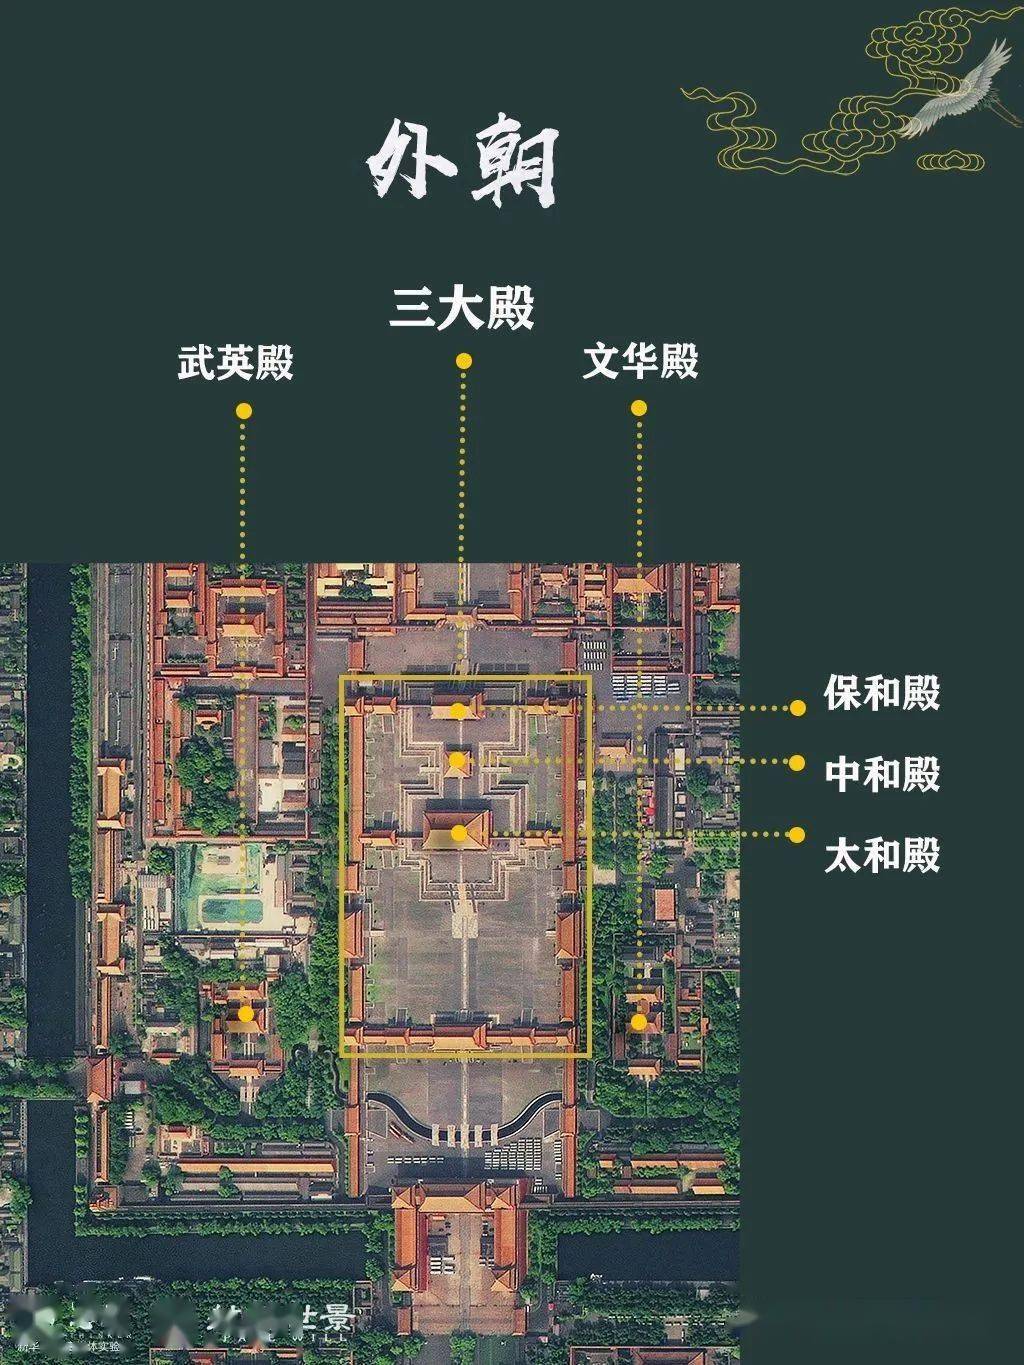 三组建筑群构成及东西侧对称的文华殿,武英殿主要由中轴线上的三大殿